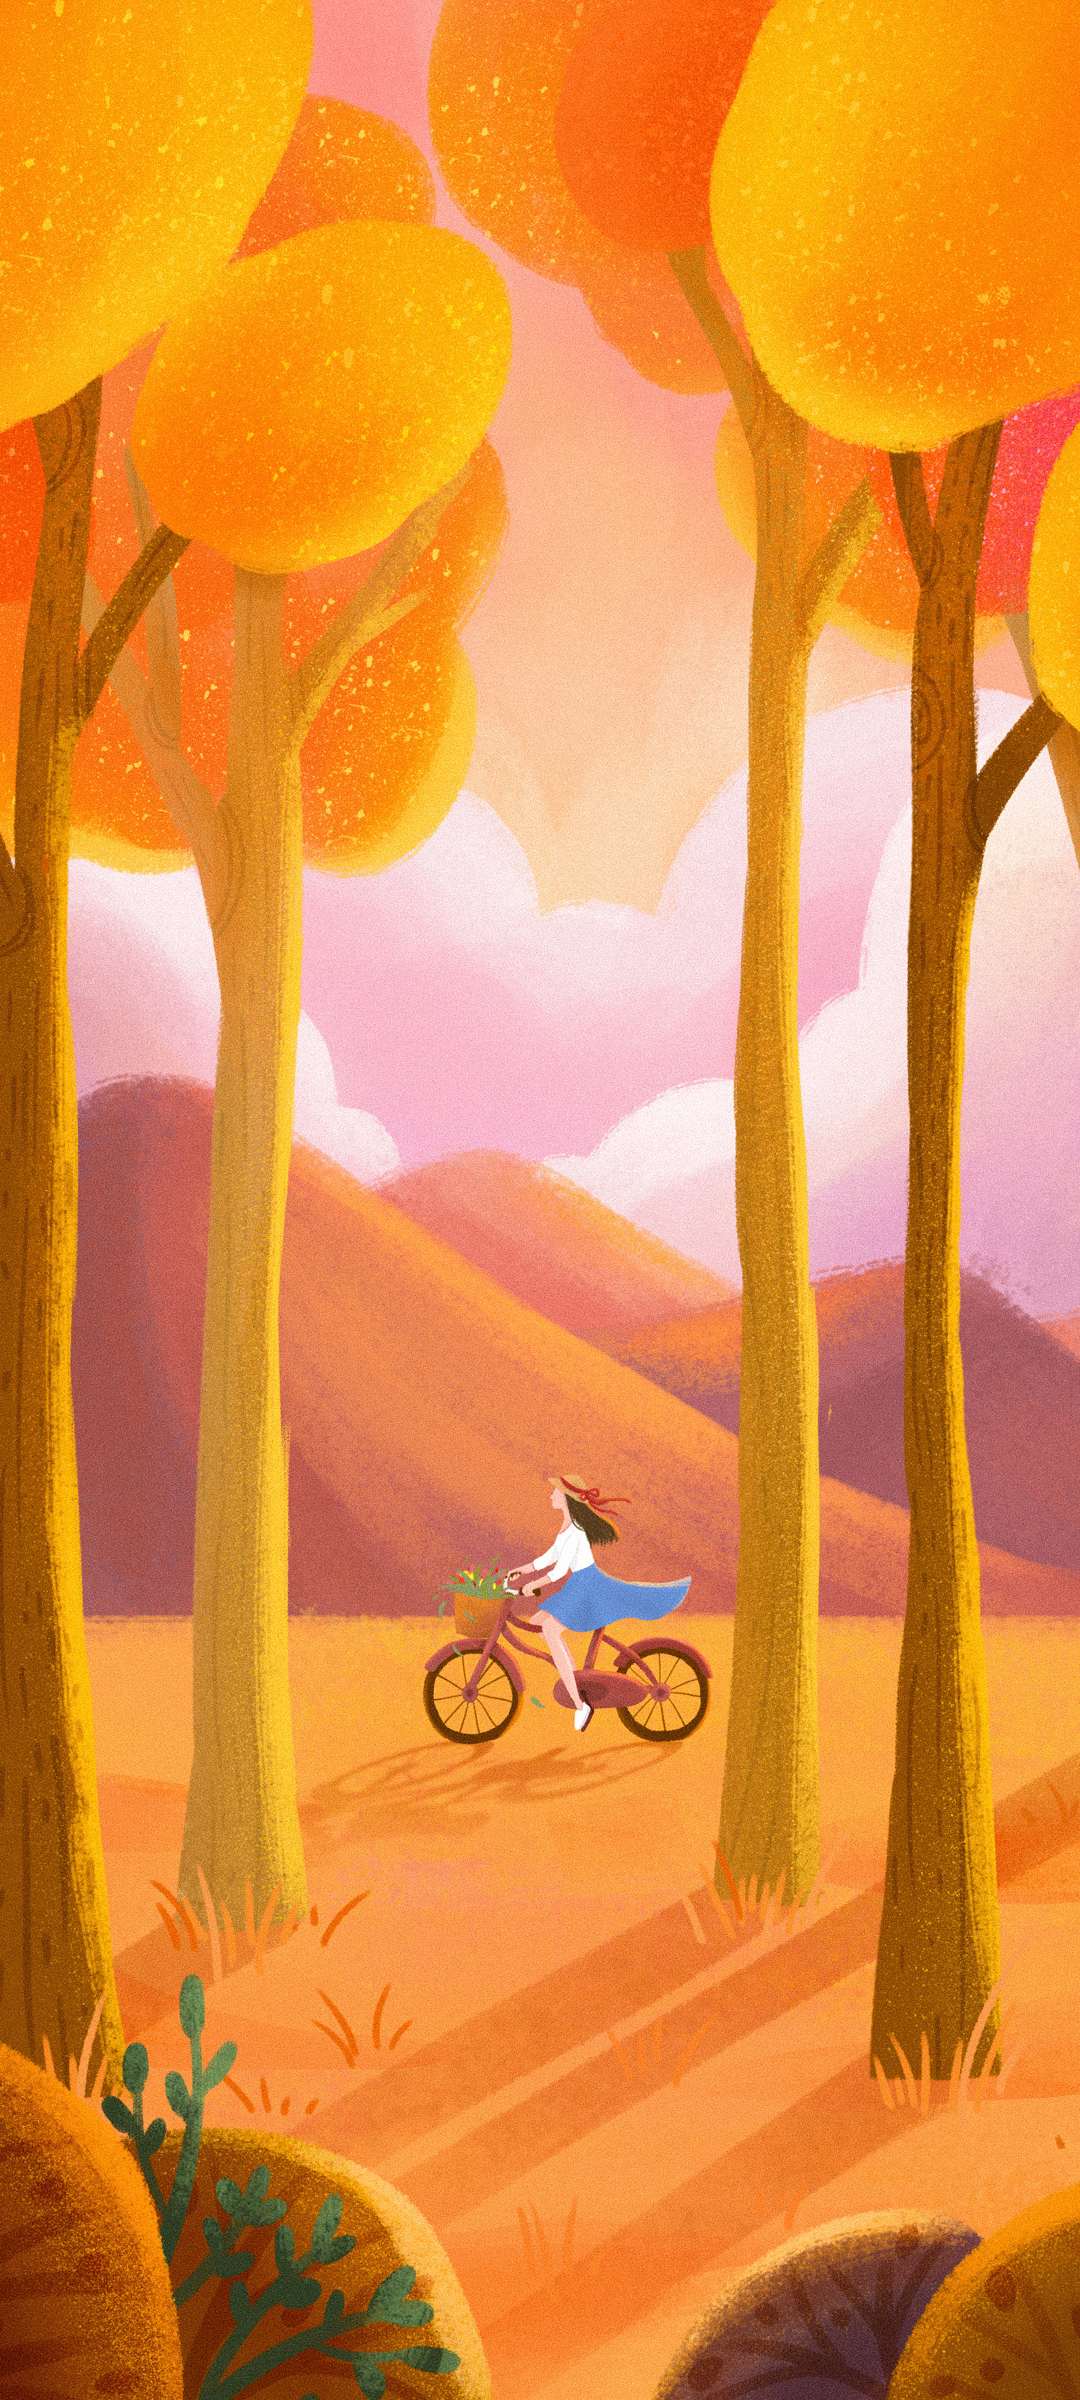 秋天 树林 女孩 单车 手绘风景 手机桌面